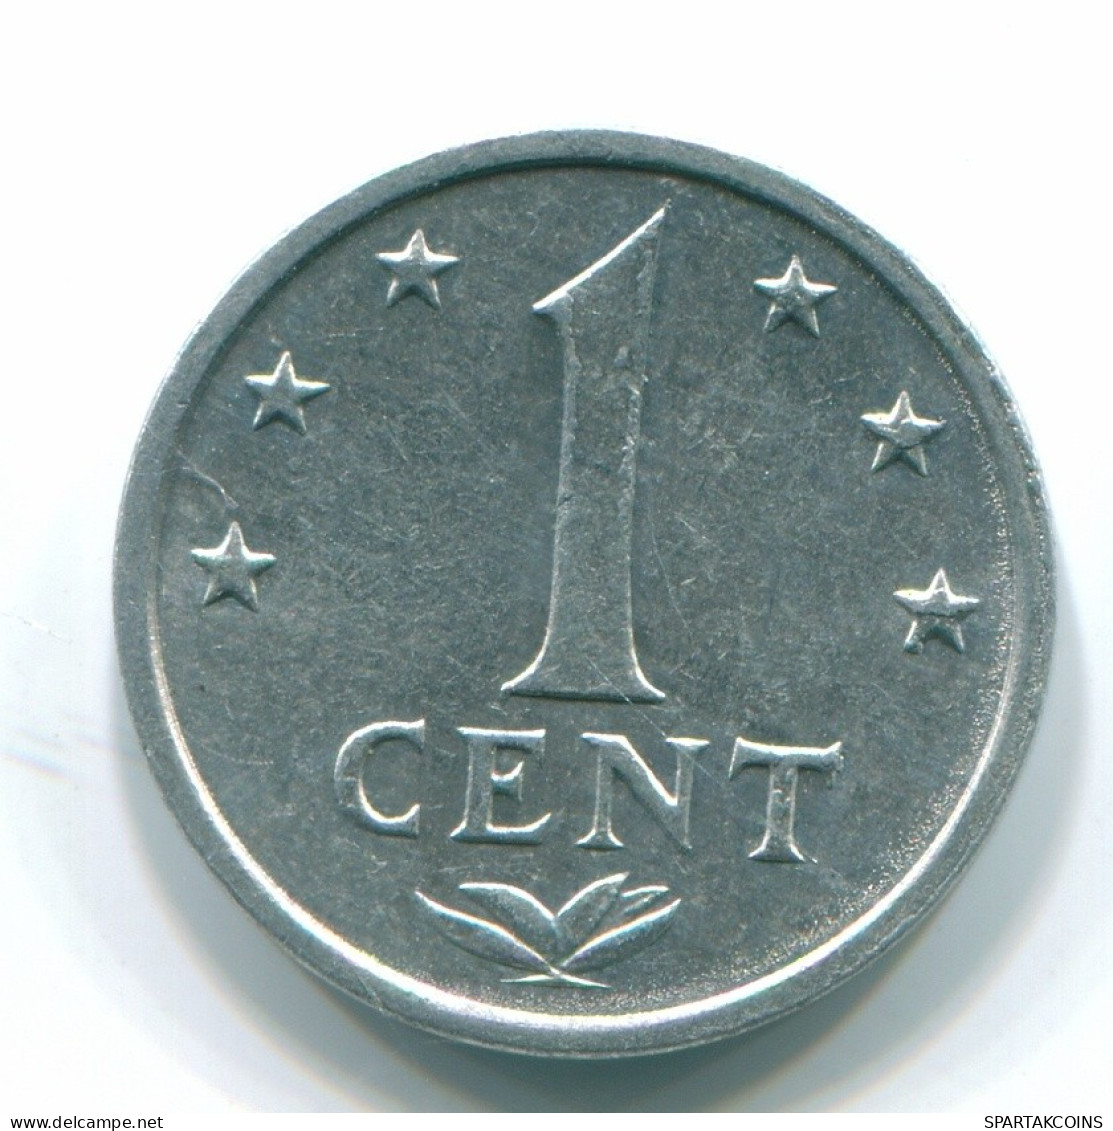 1 CENT 1980 NETHERLANDS ANTILLES Aluminium Colonial Coin #S11183.U.A - Antilles Néerlandaises